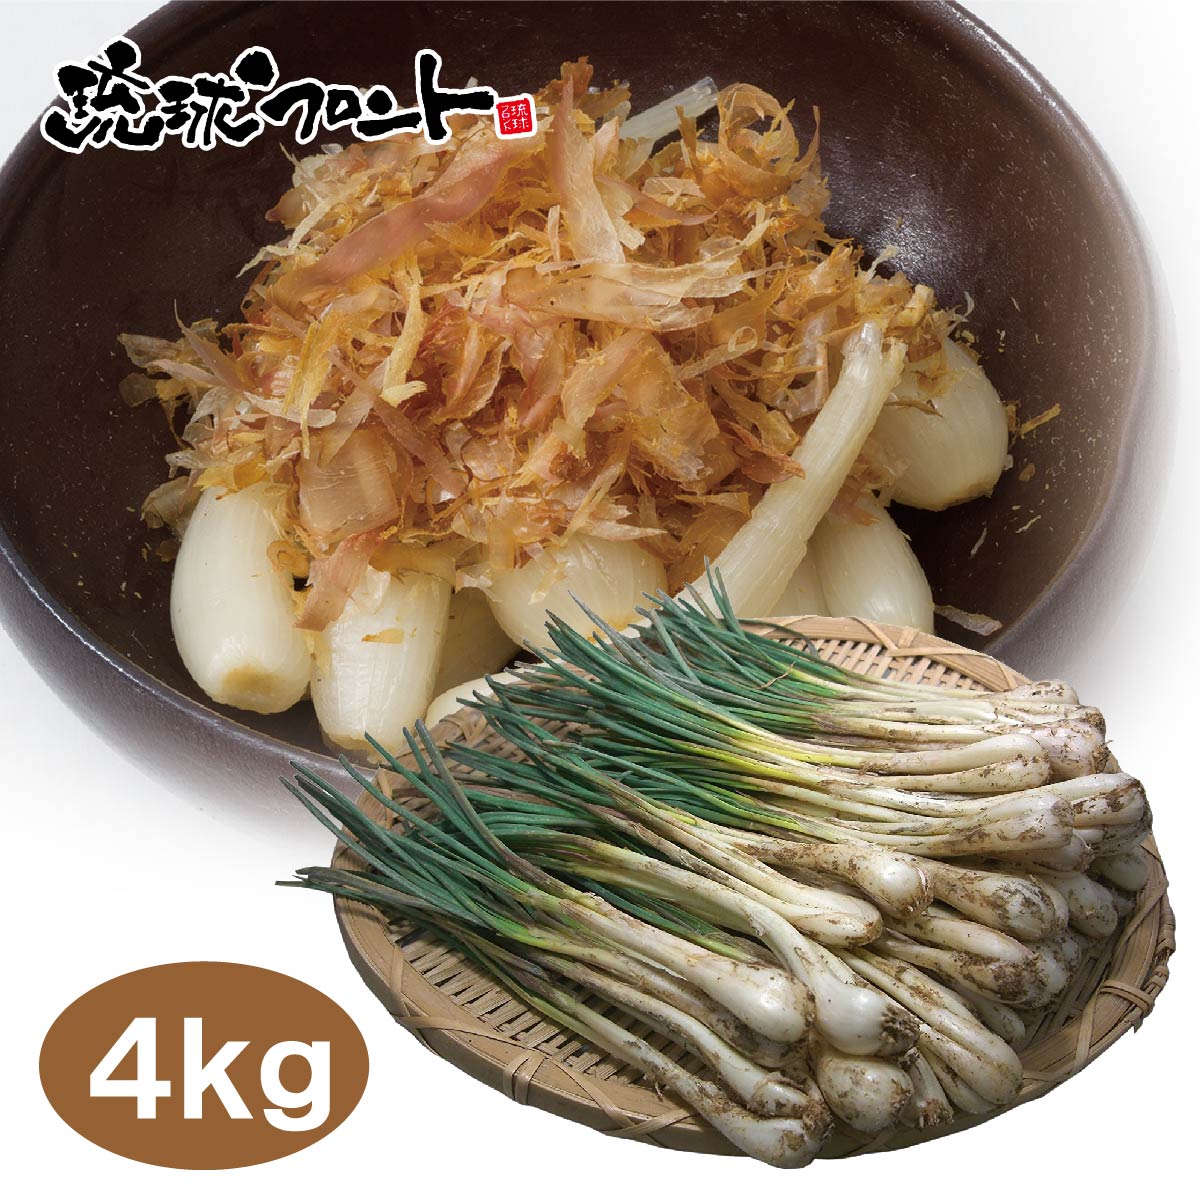 「島らっきょう」は強い香りと辛み、シャキシャキとした食感が特徴で、酒のつまみや漬物、天ぷらなどに用いられています。一度食べたらやめられない美味しさです。 ※青果物のため日時指定はお受けできません。 【名　称】沖縄県産　島らっきょう 【内 容 量】 4kg（500g×8束） 【産　地】沖縄県産 【保存方法】要冷蔵 【備考】収穫時期により見た目が写真と異なる場合がございます。また、『葉付き』『葉無し』『大きさ』は選べません。 ＞＞【送料無料】沖縄県産 島らっきょう 1kg 　 3,600円 ＞＞【送料無料】沖縄県産 島らっきょう 2kg 　 6,100円 ＞＞【送料無料】沖縄県産 島らっきょう 3kg 　 8,500円 ＞＞【送料無料】沖縄県産 島らっきょう 4kg 　 11,000円 【ワード】沖縄 お土産 琉球フロント 沖縄県産 島らっきょう 1kg 島ラッキョウ らっきょう おつまみ 新鮮 土付き